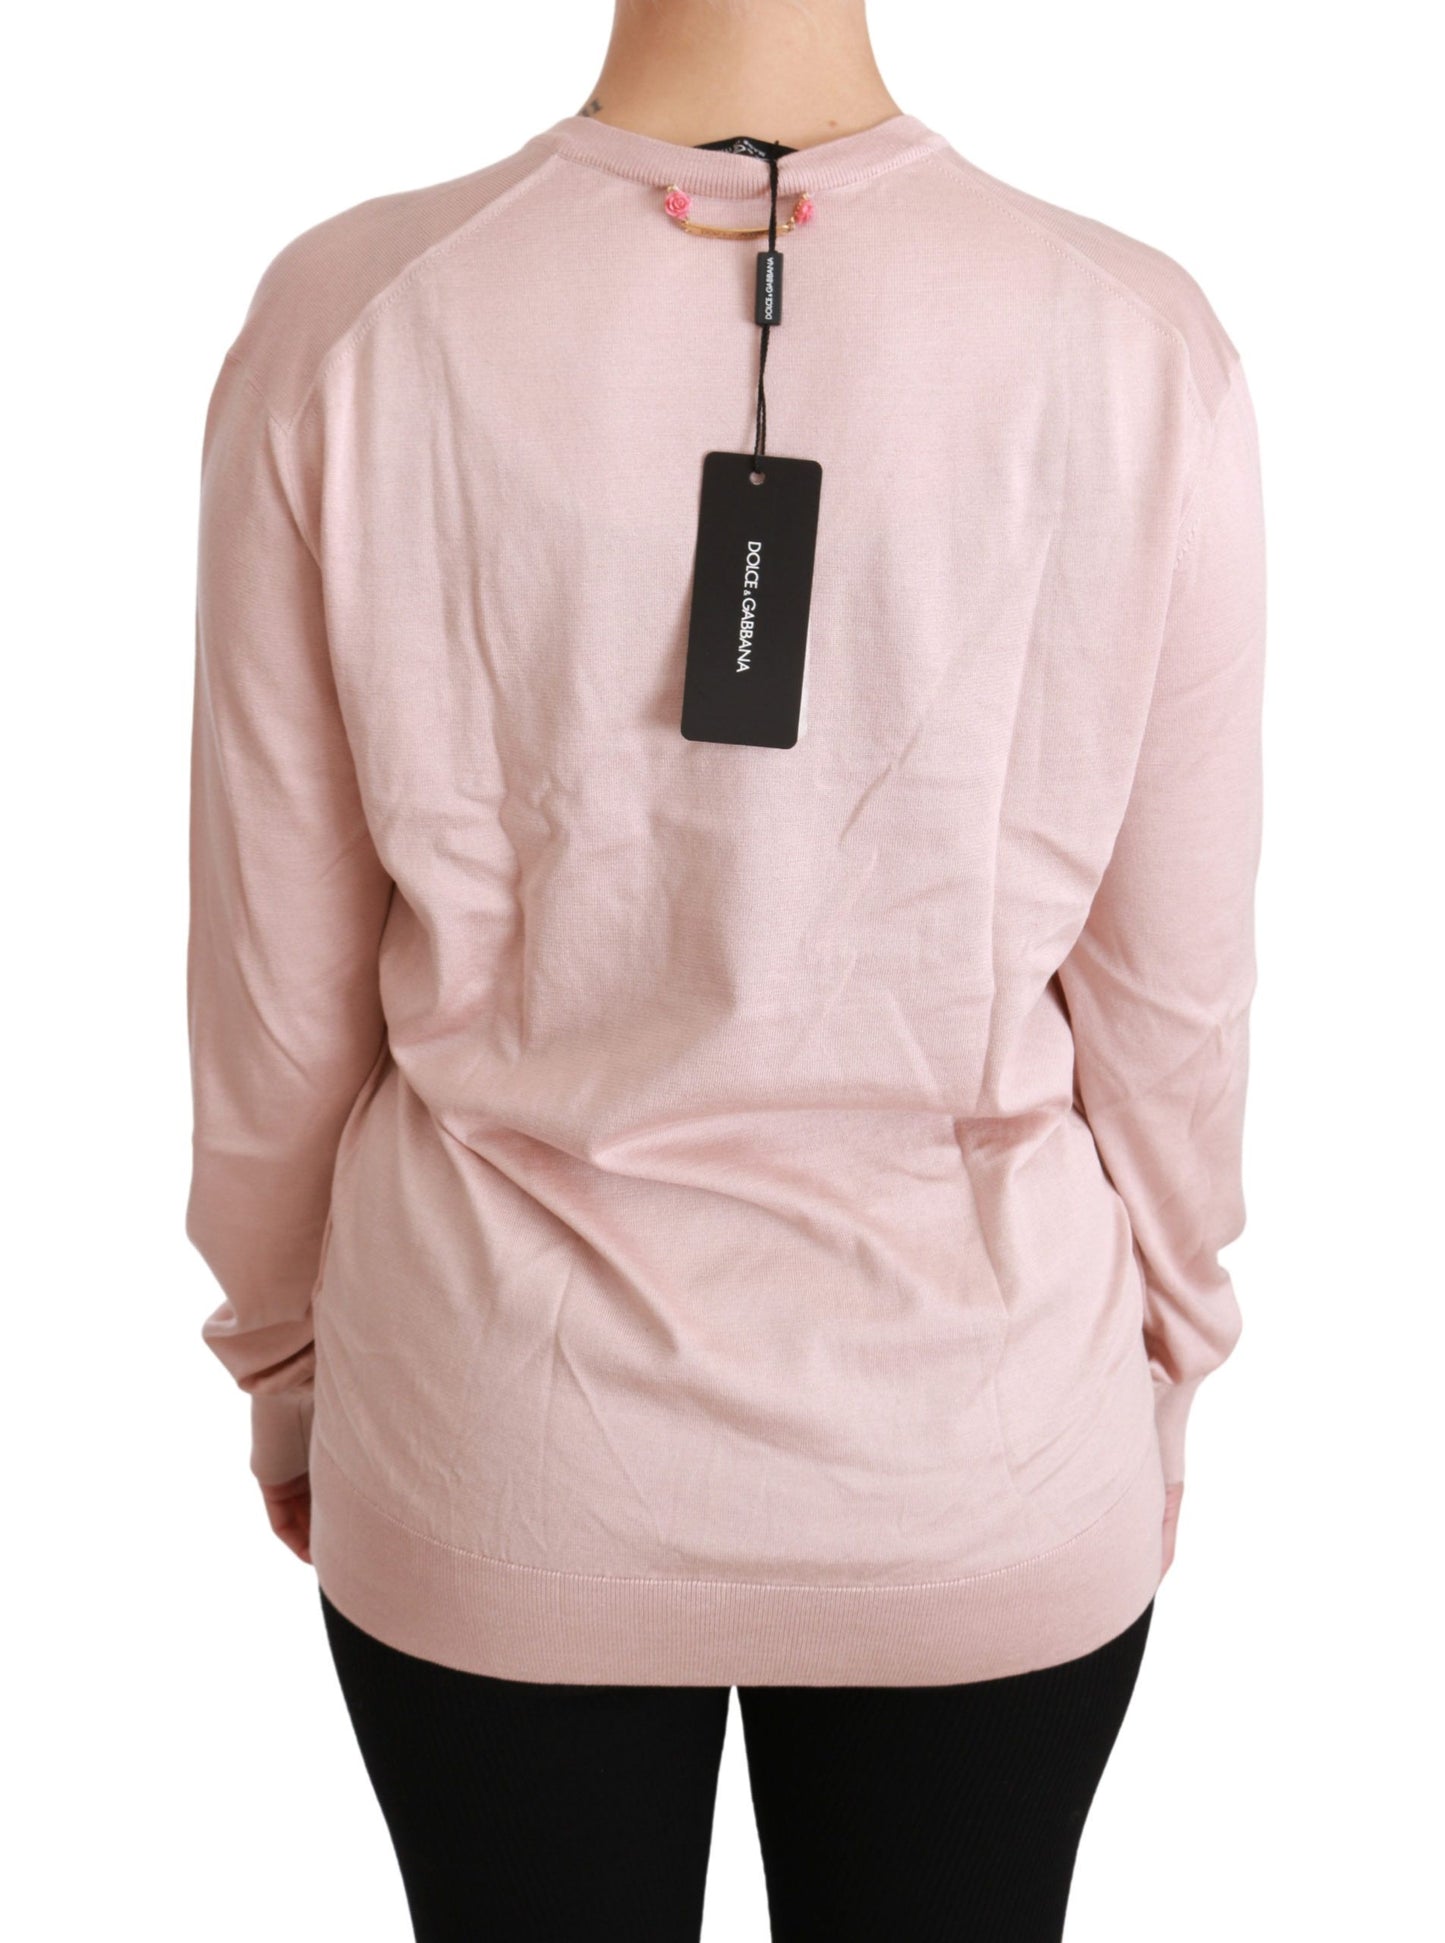 Pink Floral Silk V-Neck Sweater